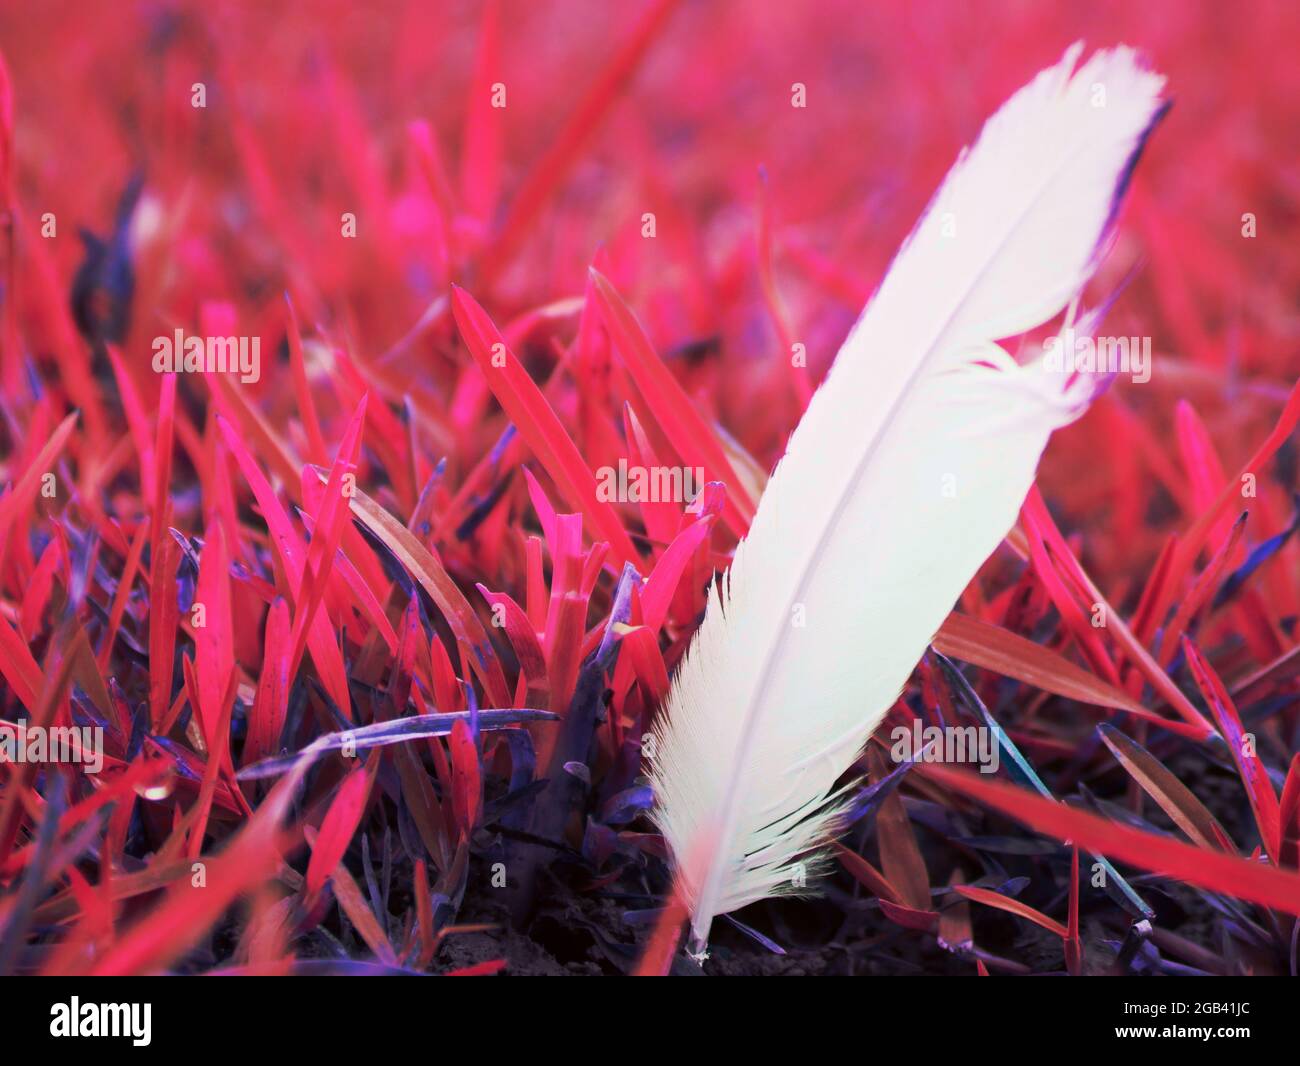 Aile d'oiseau de couleur blanche poussant sur terrain d'herbe rose, faune reliques nature commercial fond. Banque D'Images